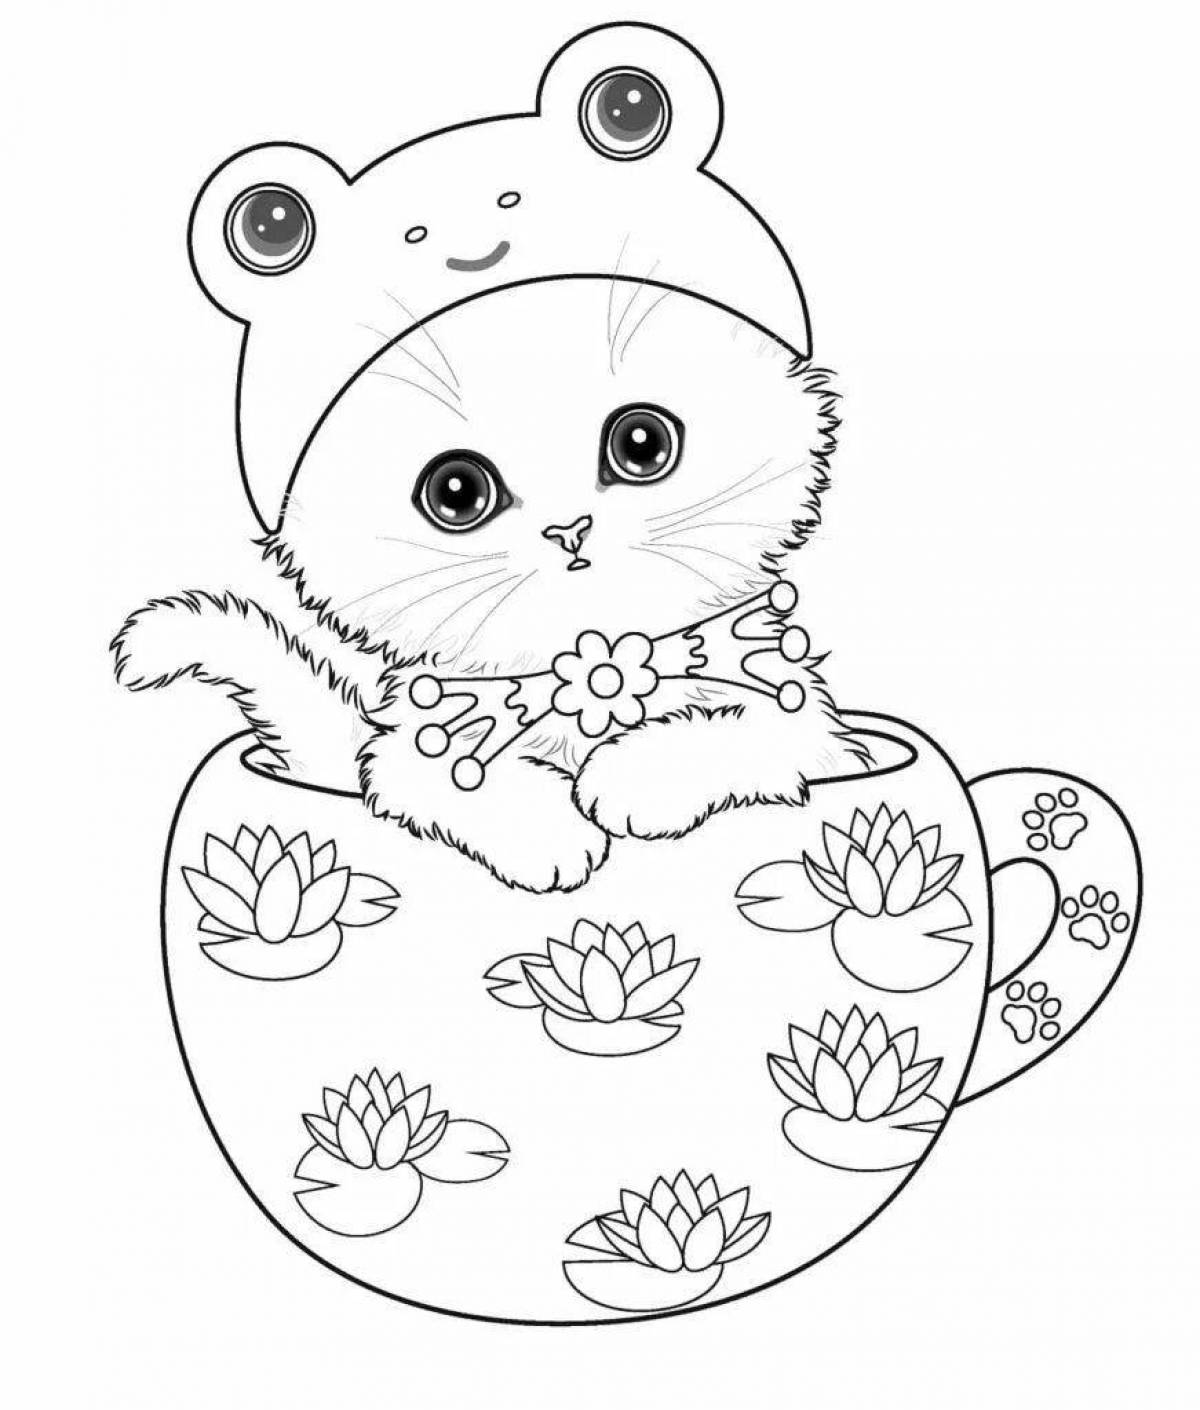 Adorable kitten kote coloring book